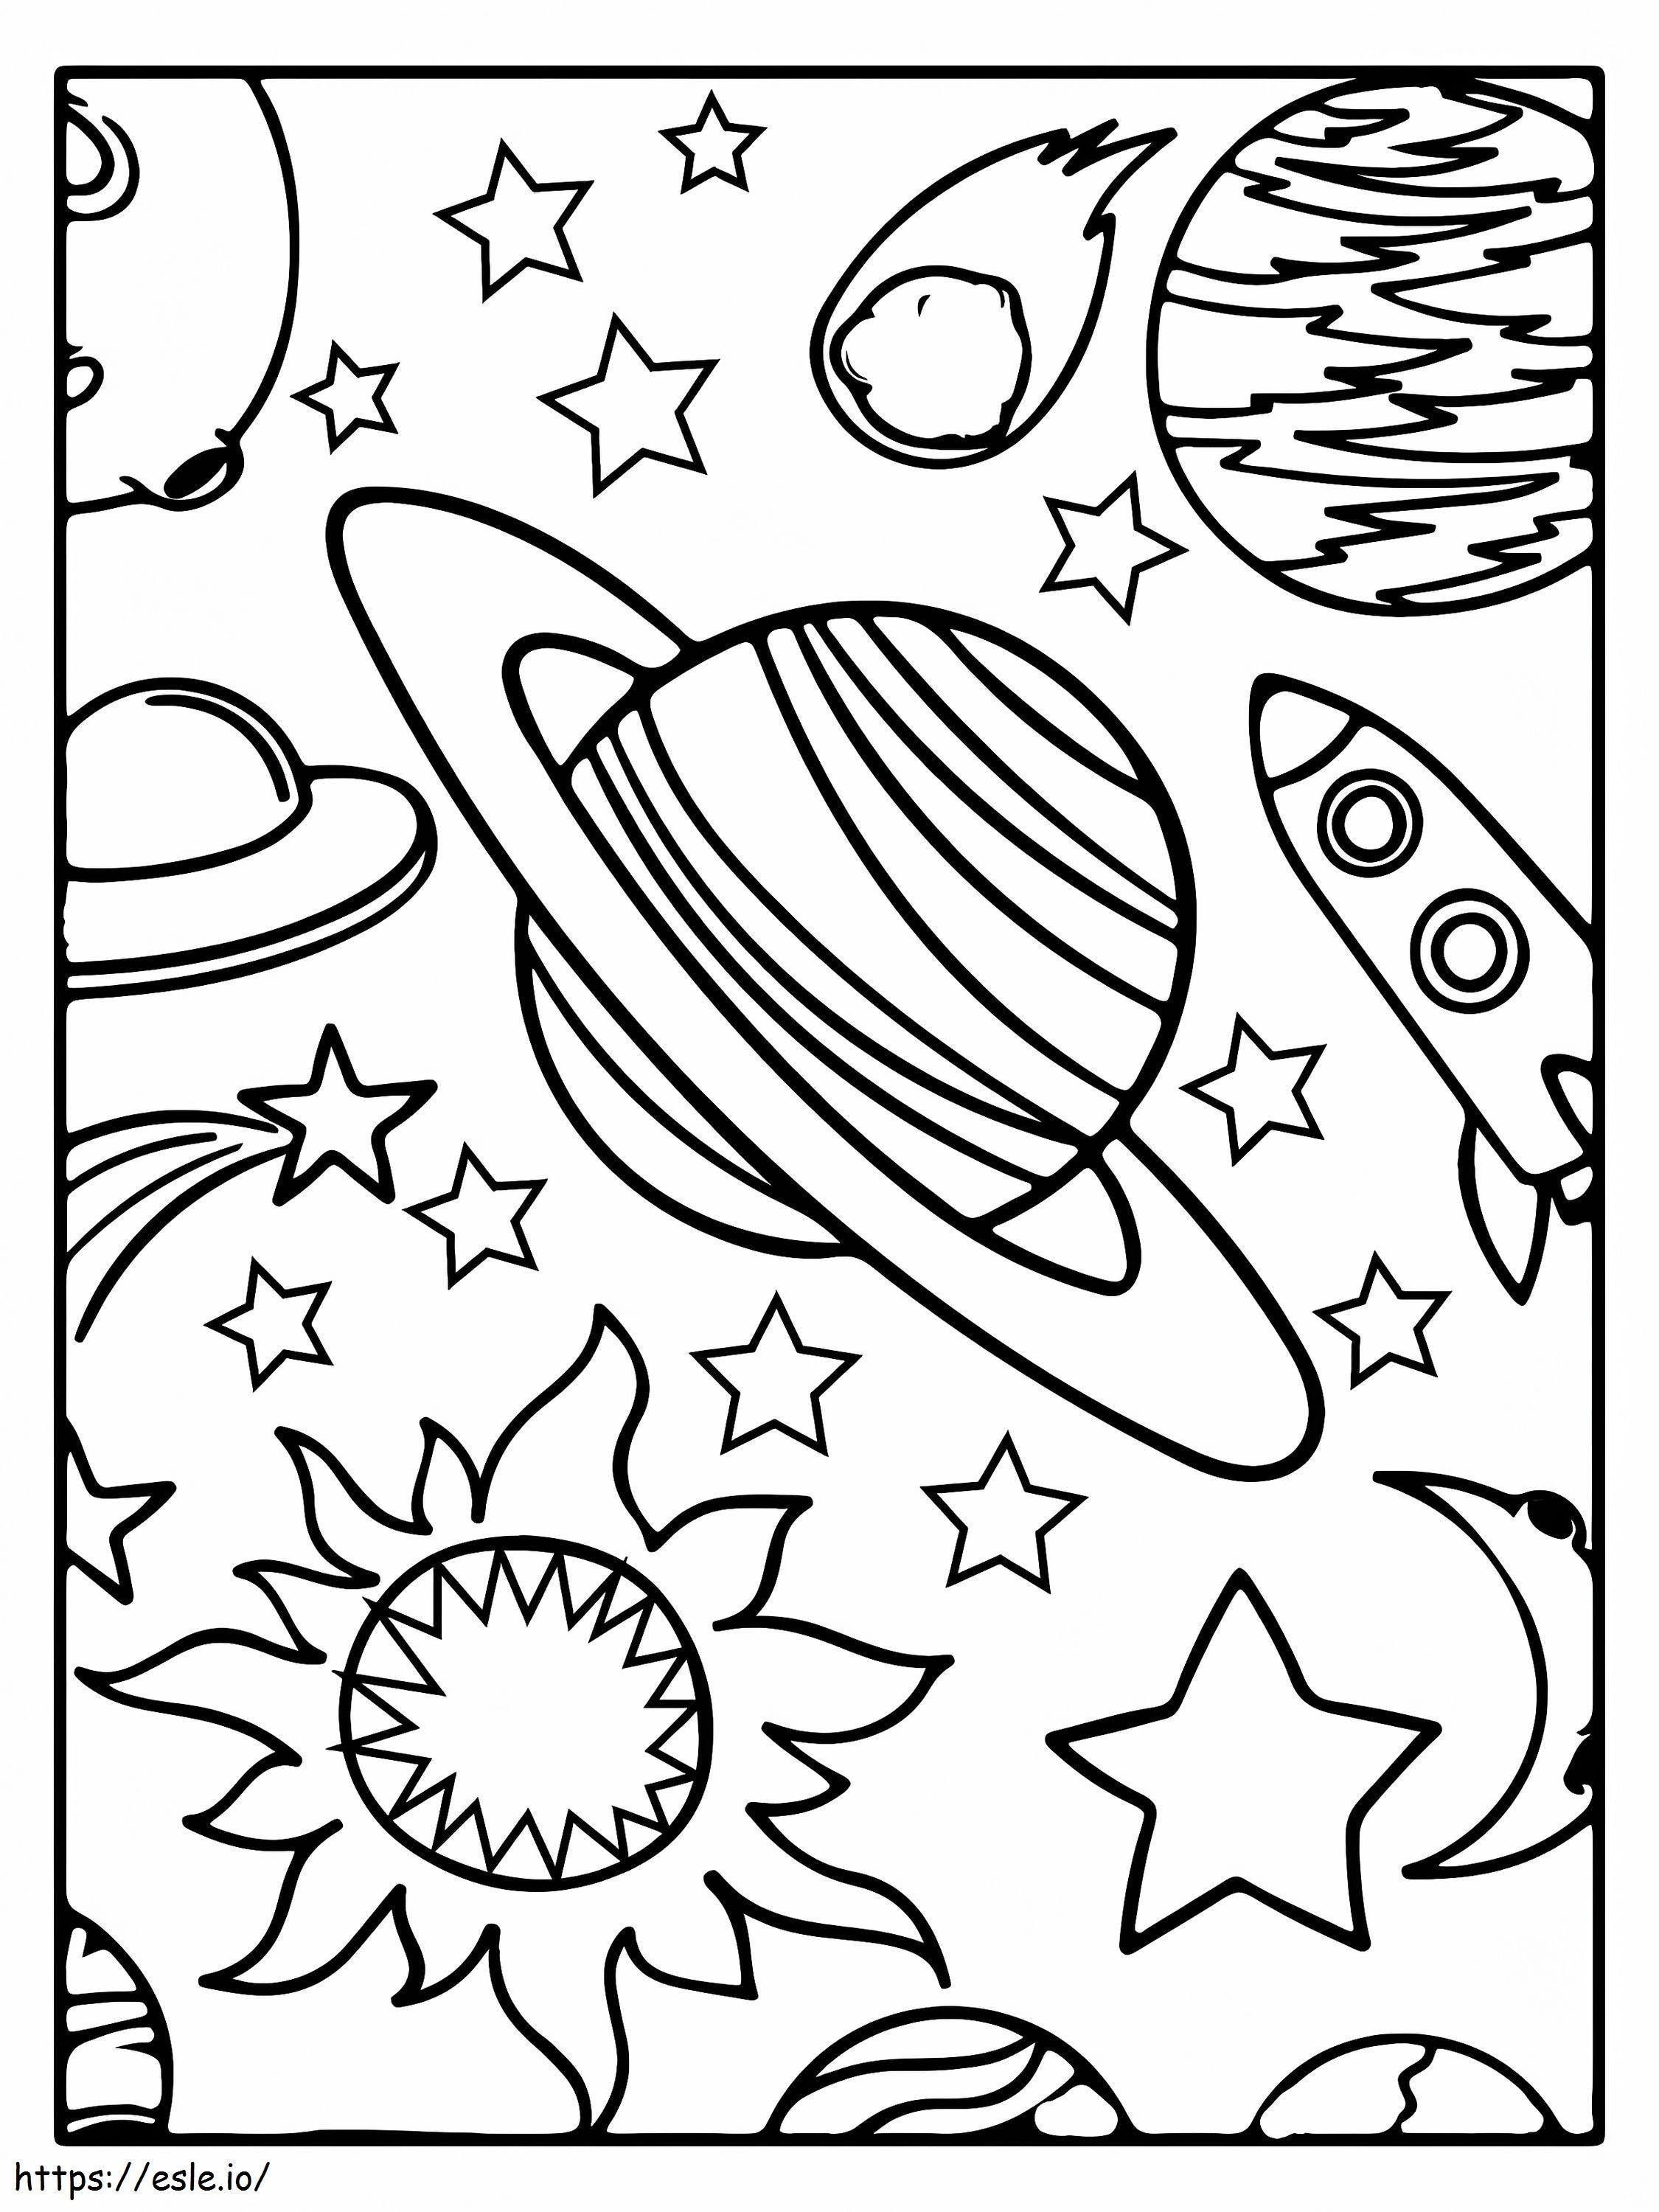 Saturno e razzi da colorare